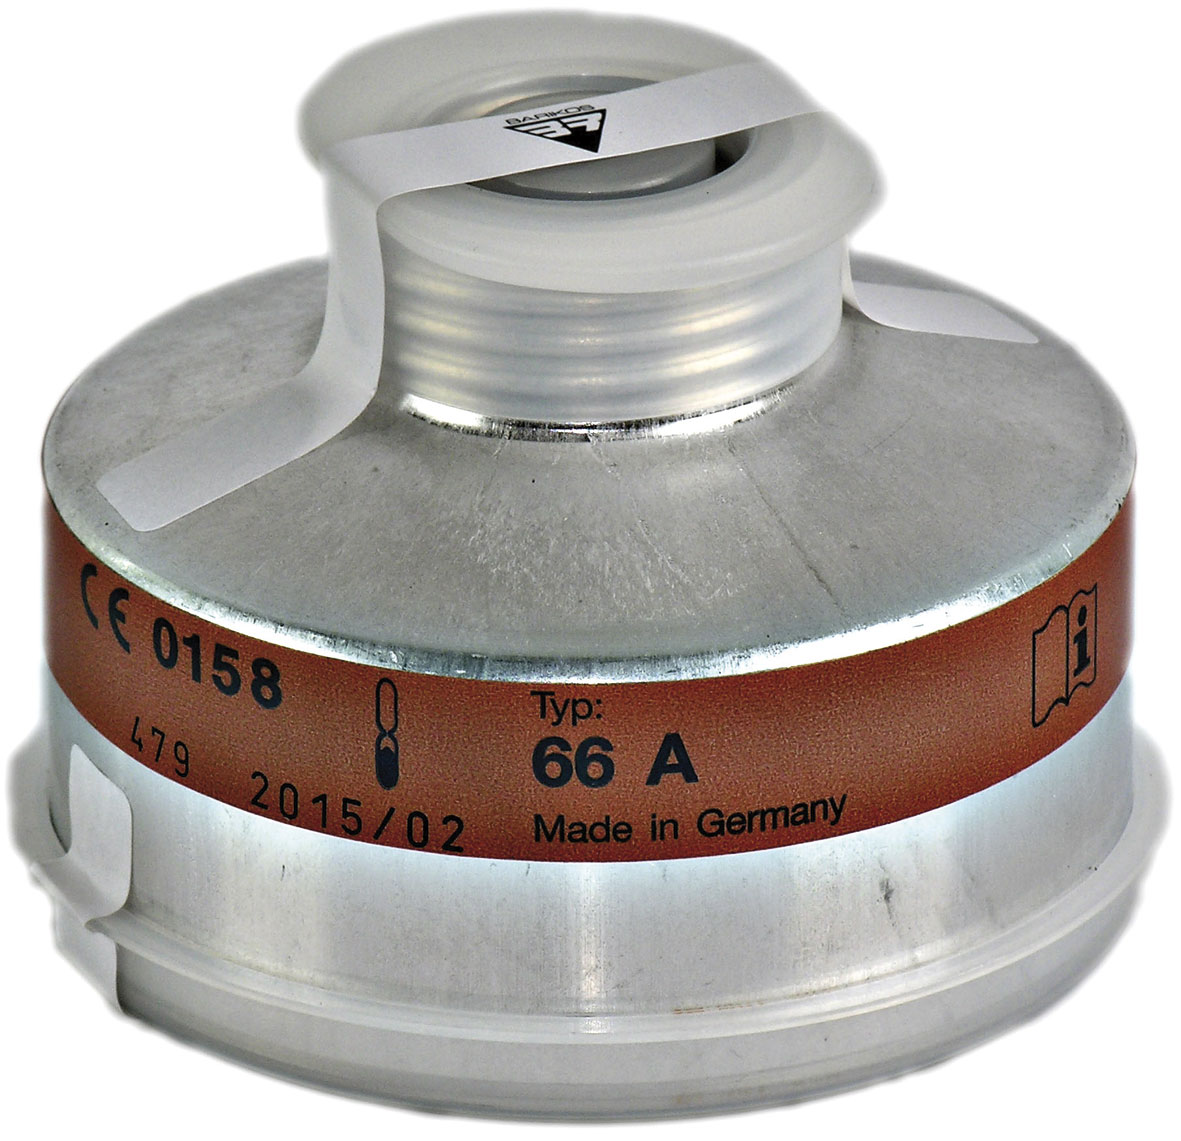 Filtro respiratorio rosca para gases y vapores orgánicos p.e.&lt;65º y partículas tóxicas. Clase protección: AX-P3. BARIKOS